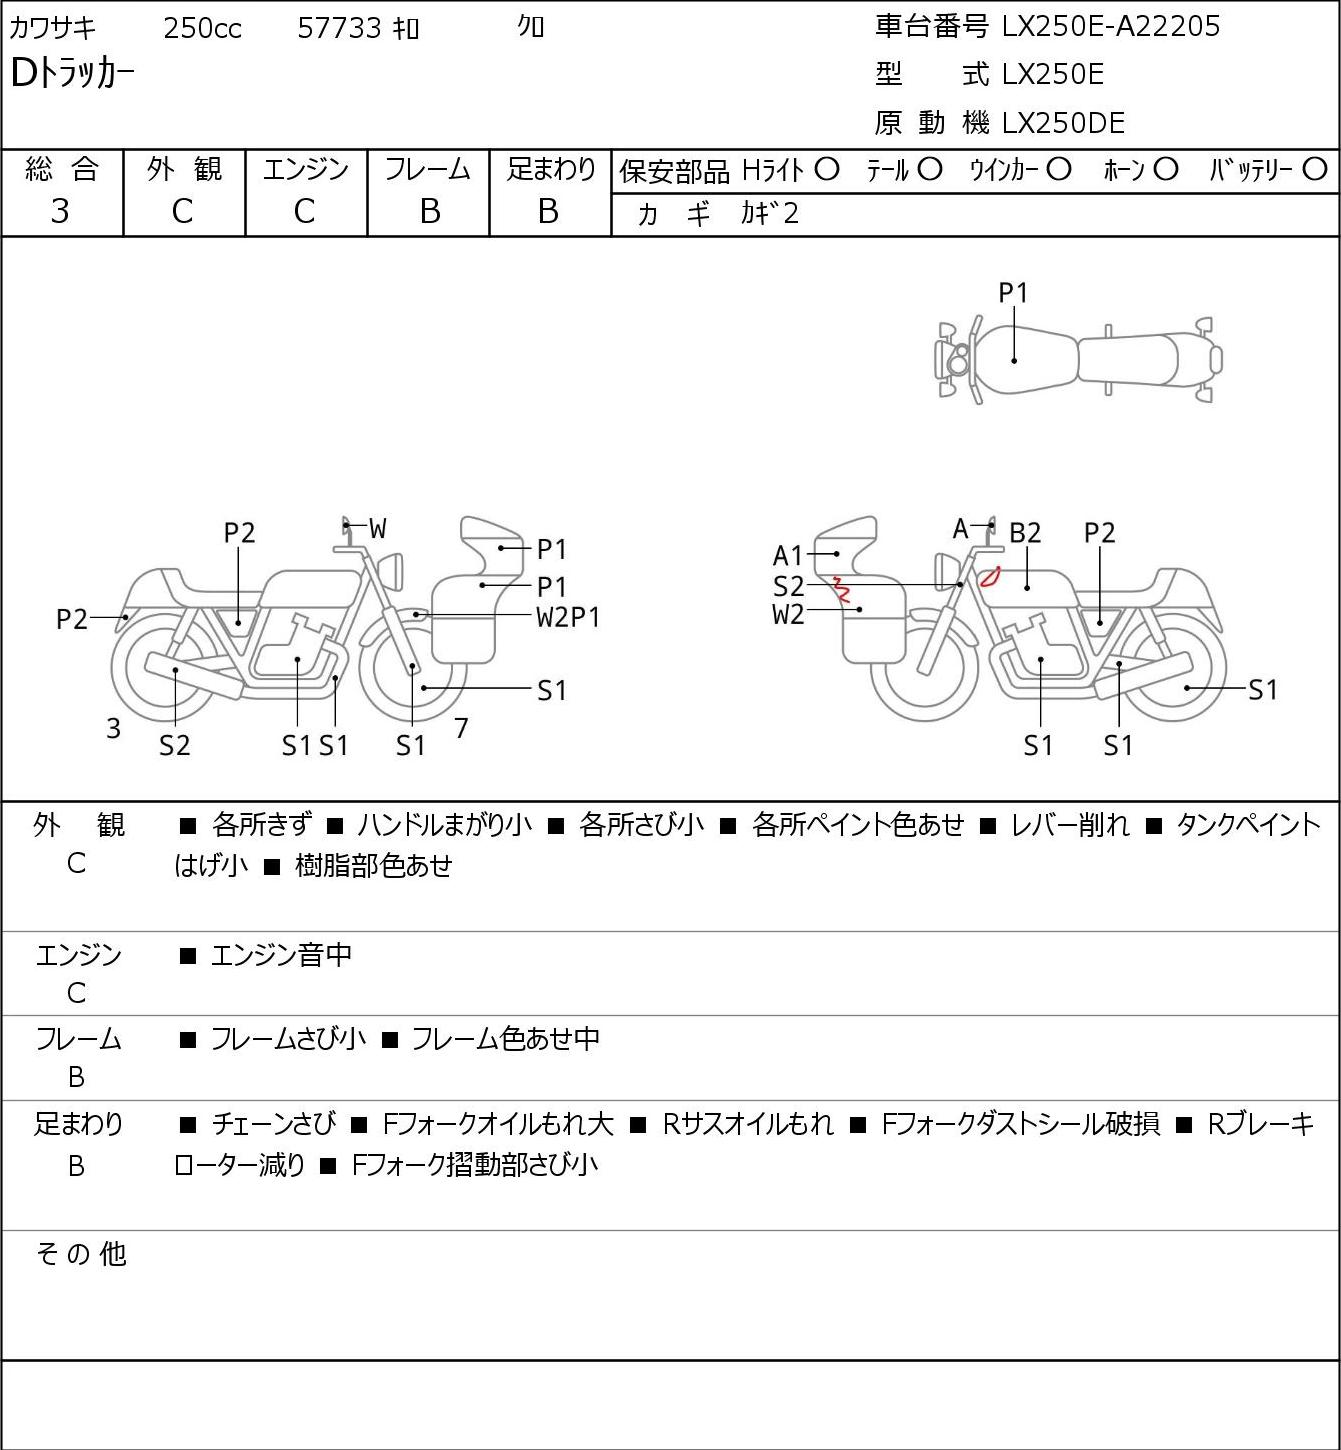 Kawasaki D-TRACKER LX250E г. 57733